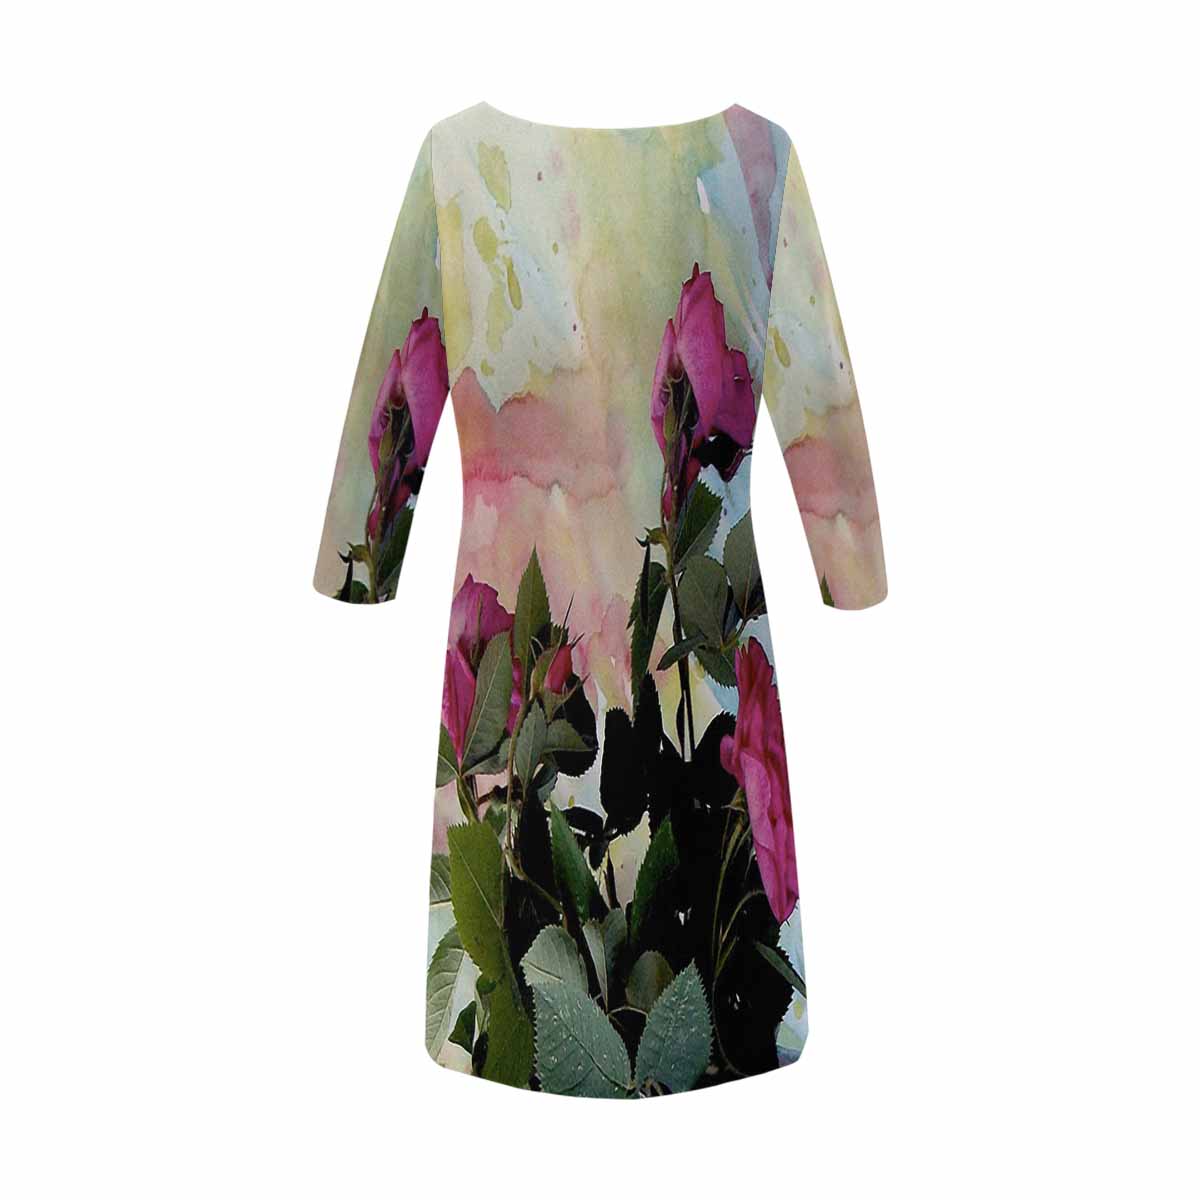 Vintage floral loose dress, model D29532 Design 21